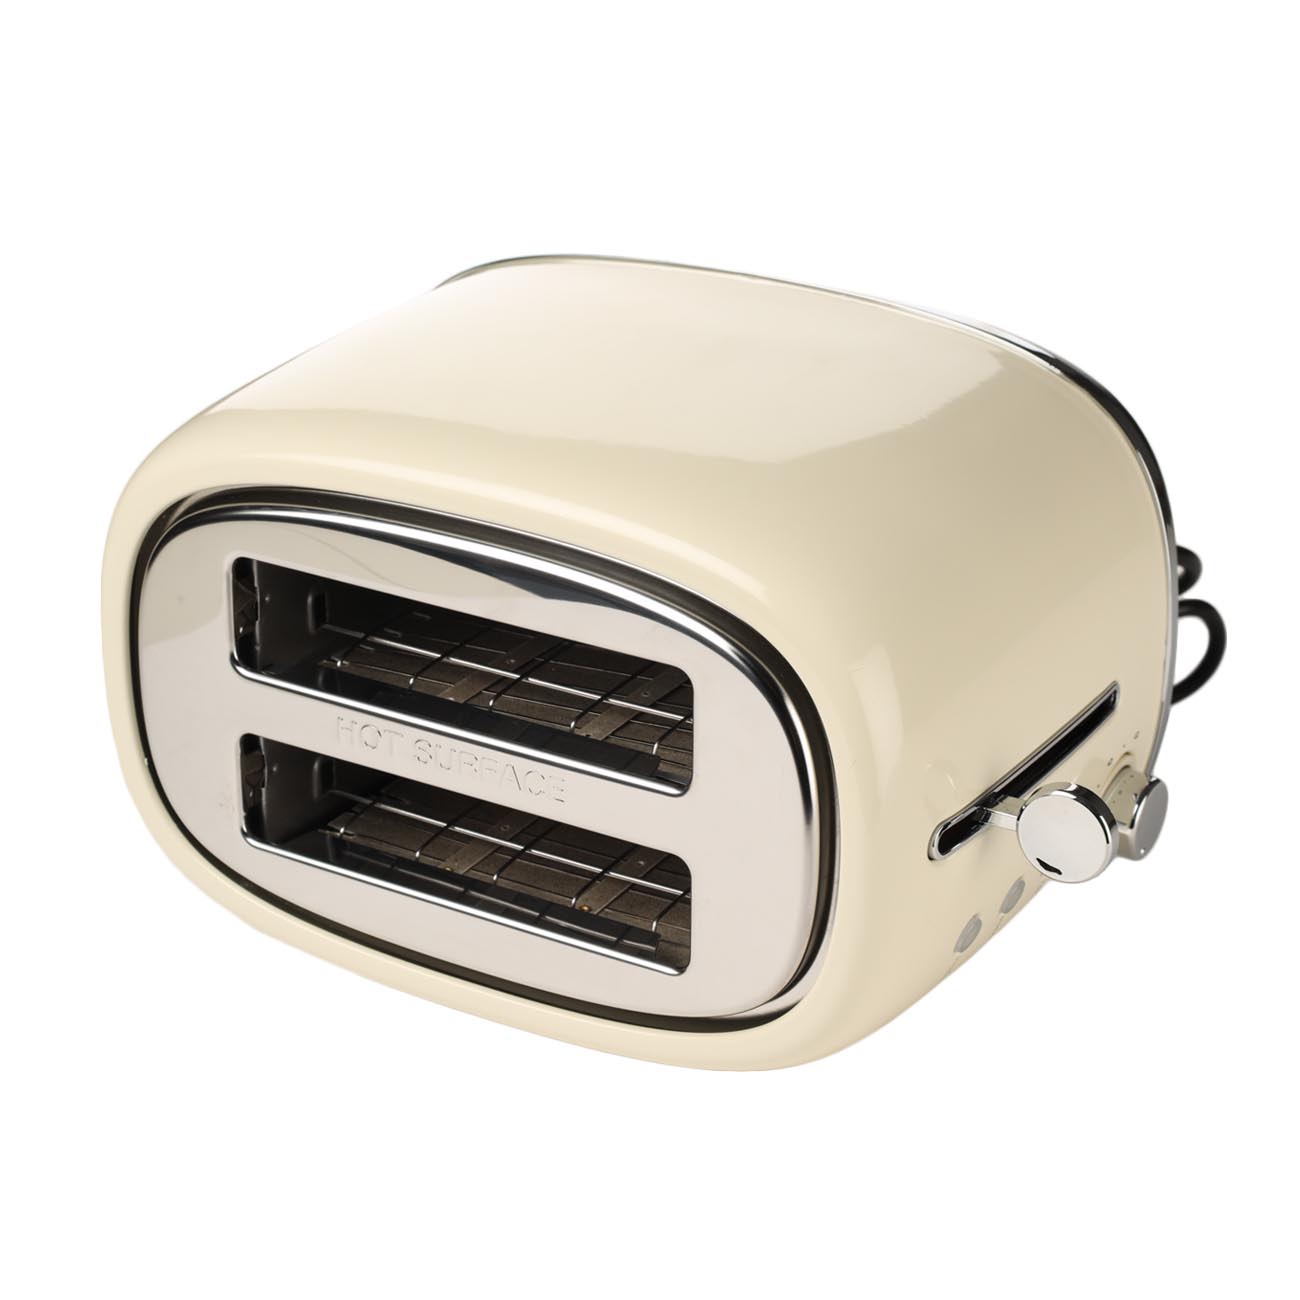 Тостер электр, 730-870 Вт, 6 режим, болат / пластик, бежевый, Vintage kitchen изображение № 6